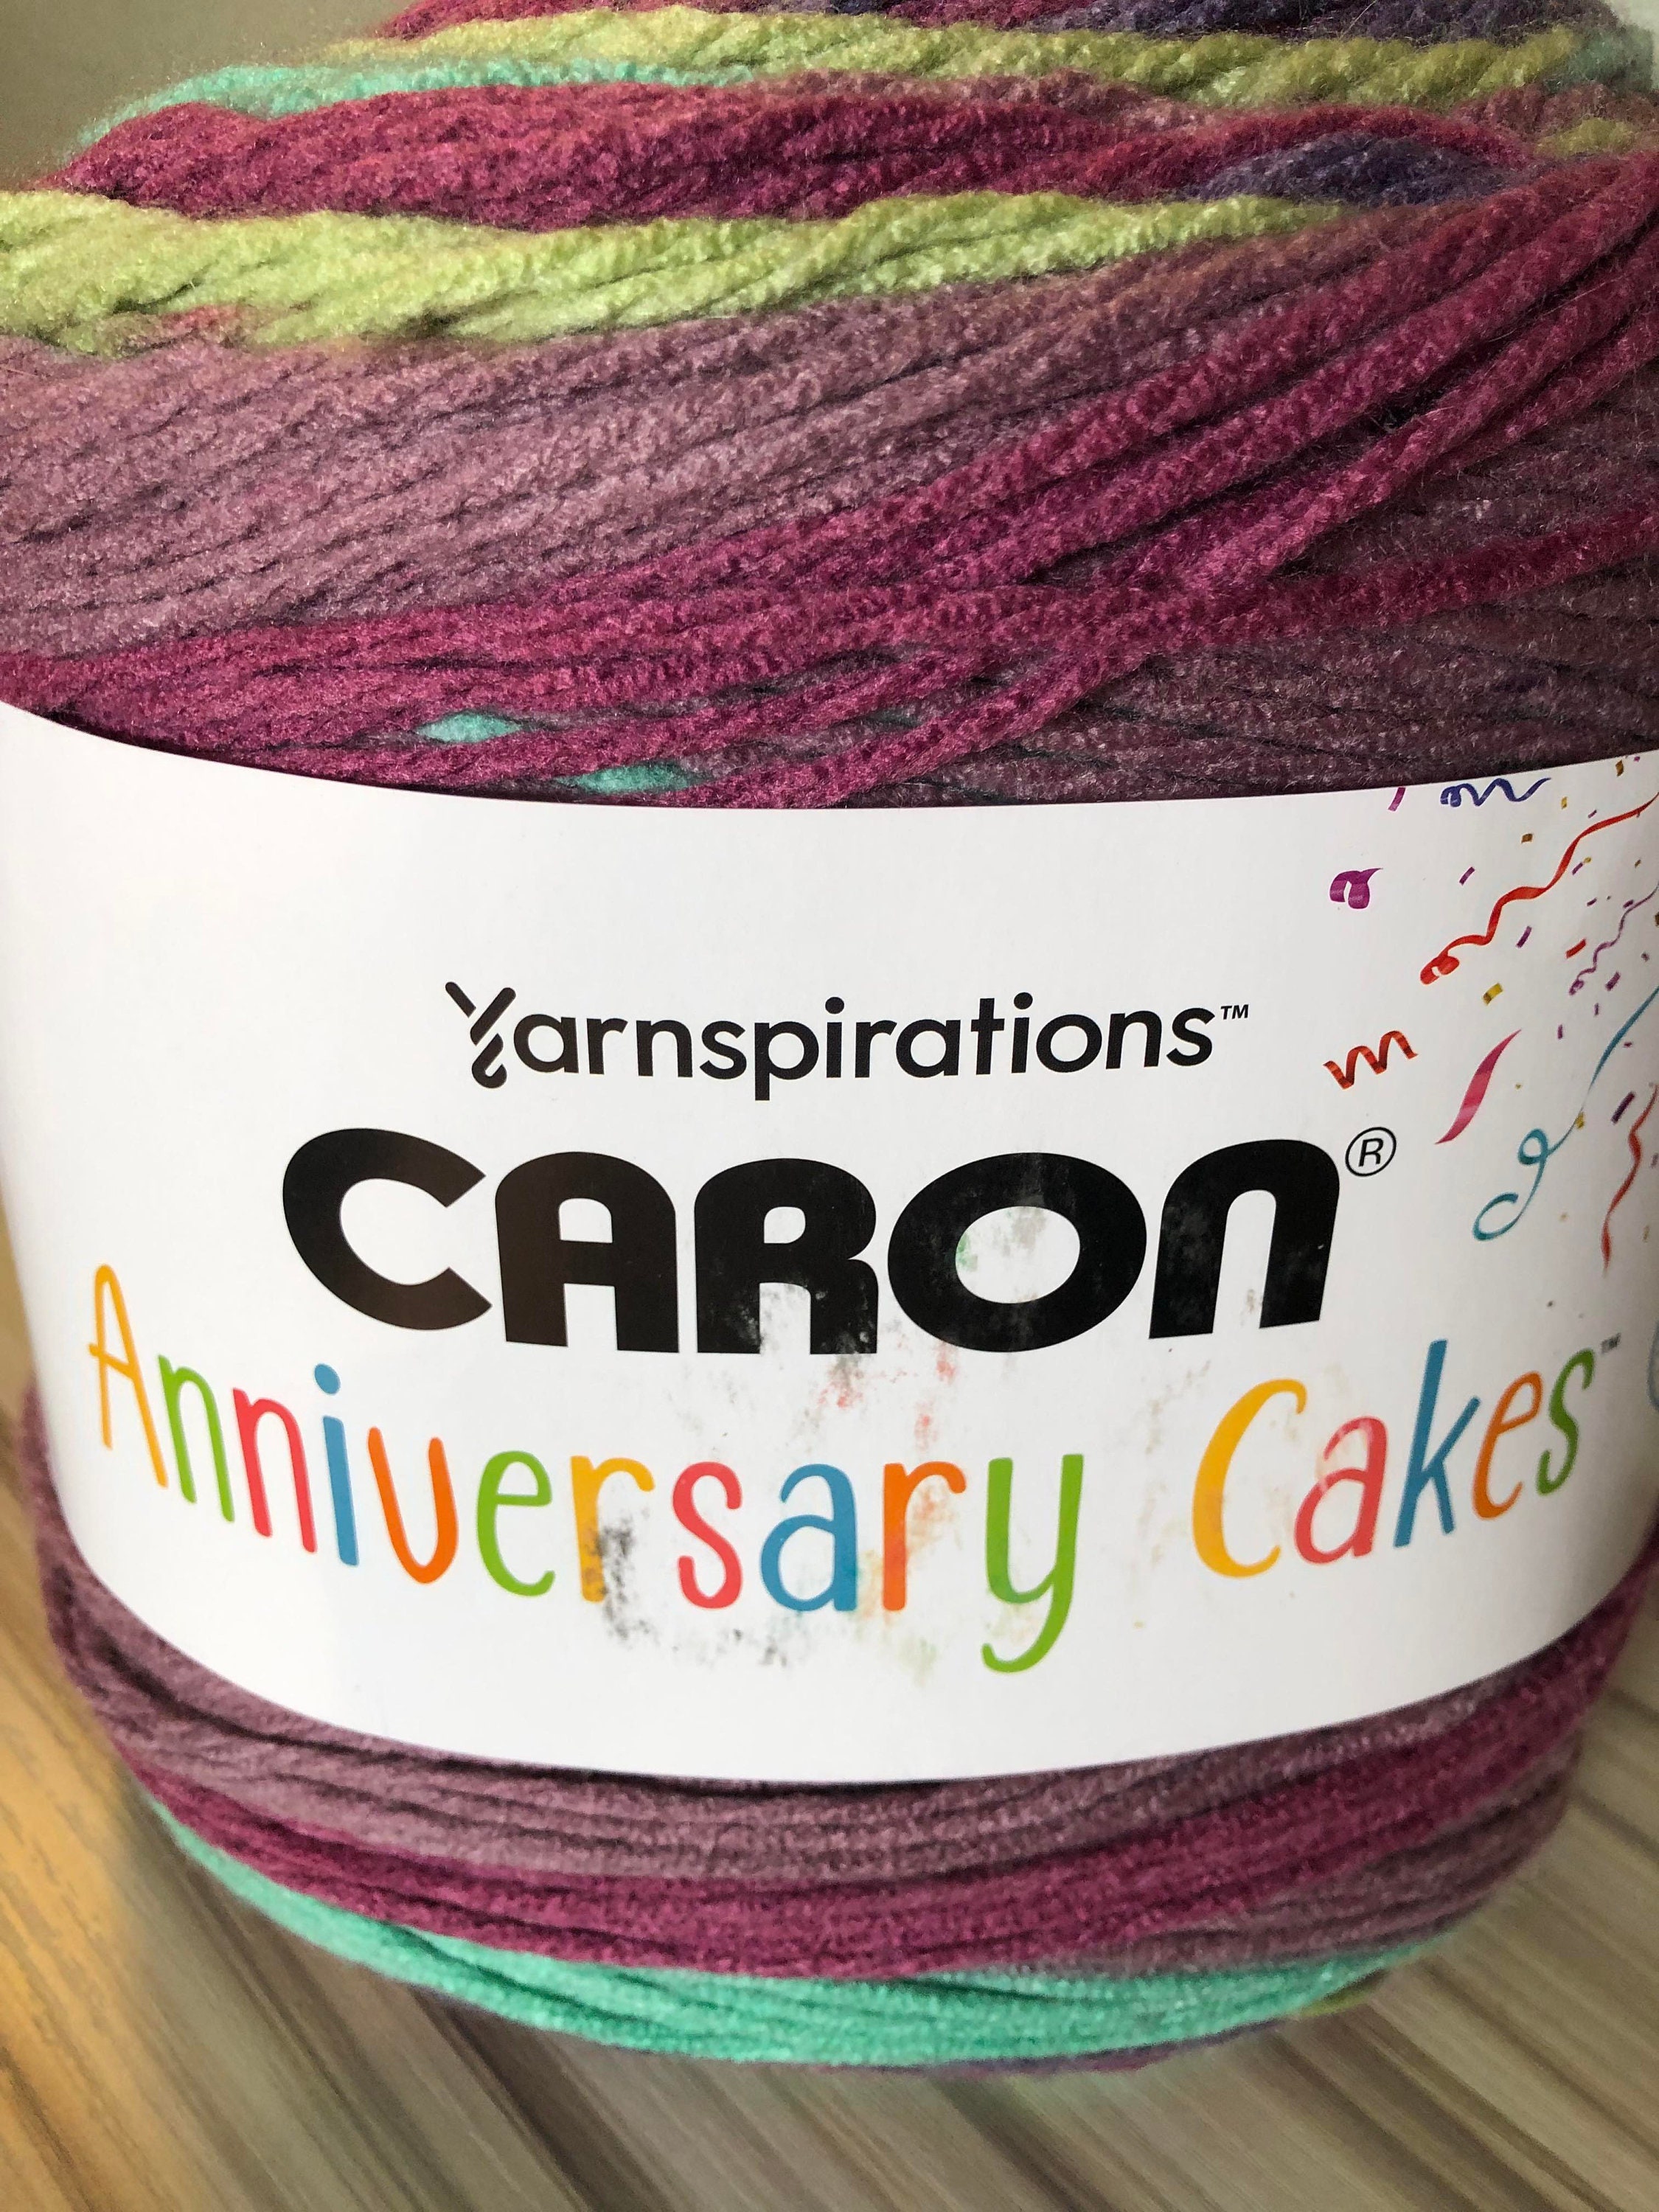 Caron Anniversary Cake Yarn -  Norway